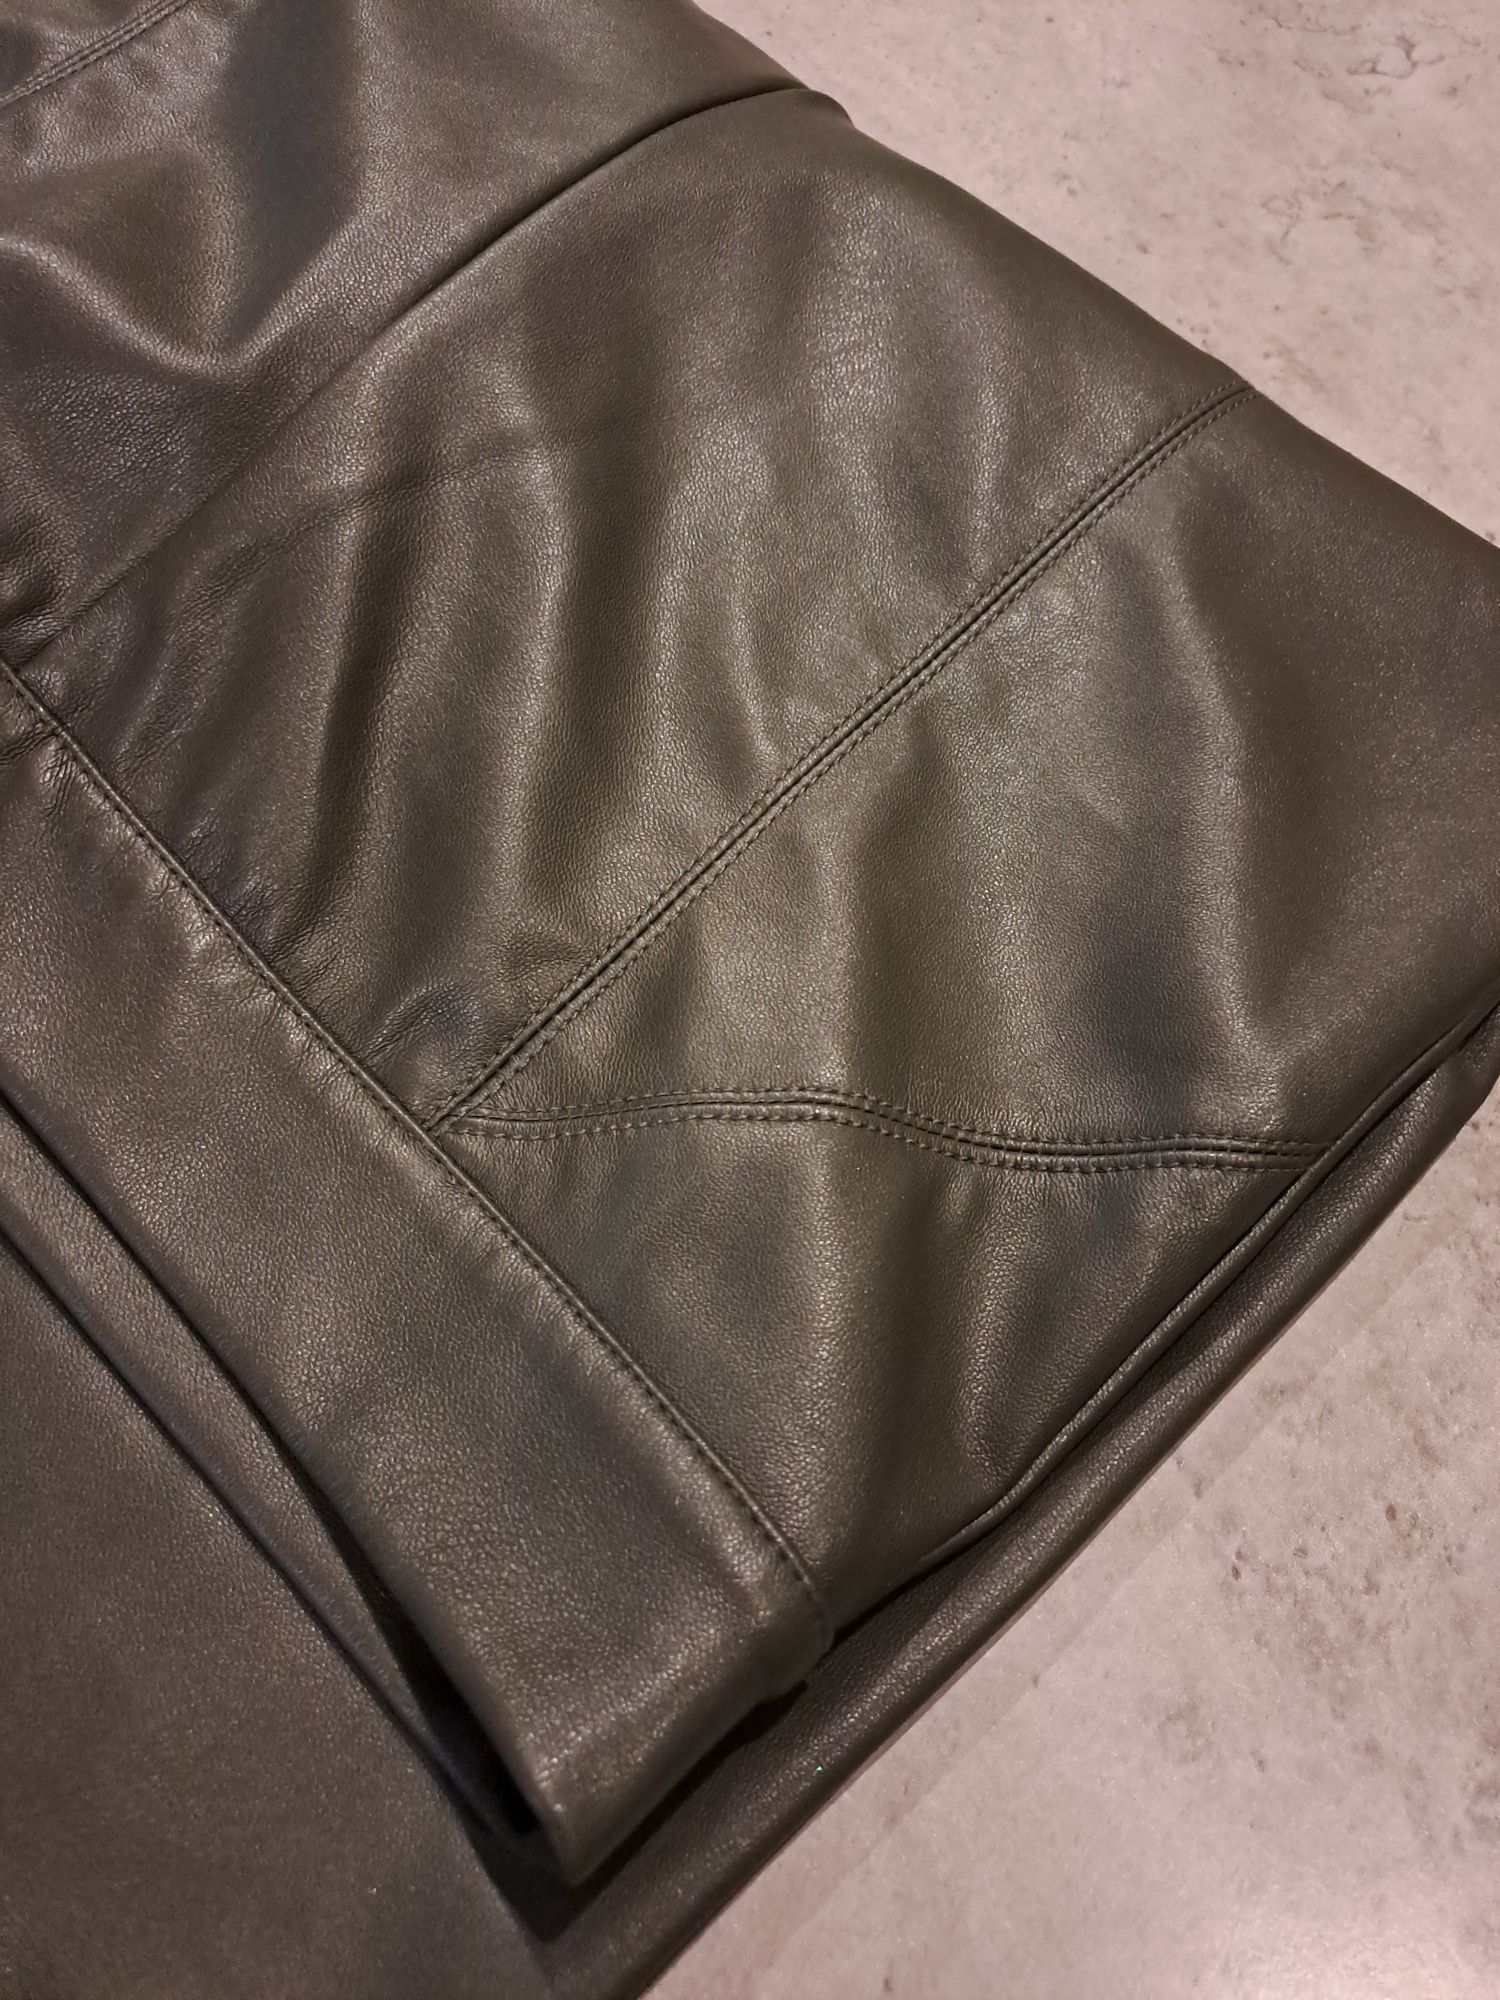 Spodnie damskie skórzane  nowe bez metki S/M,C&A khaki